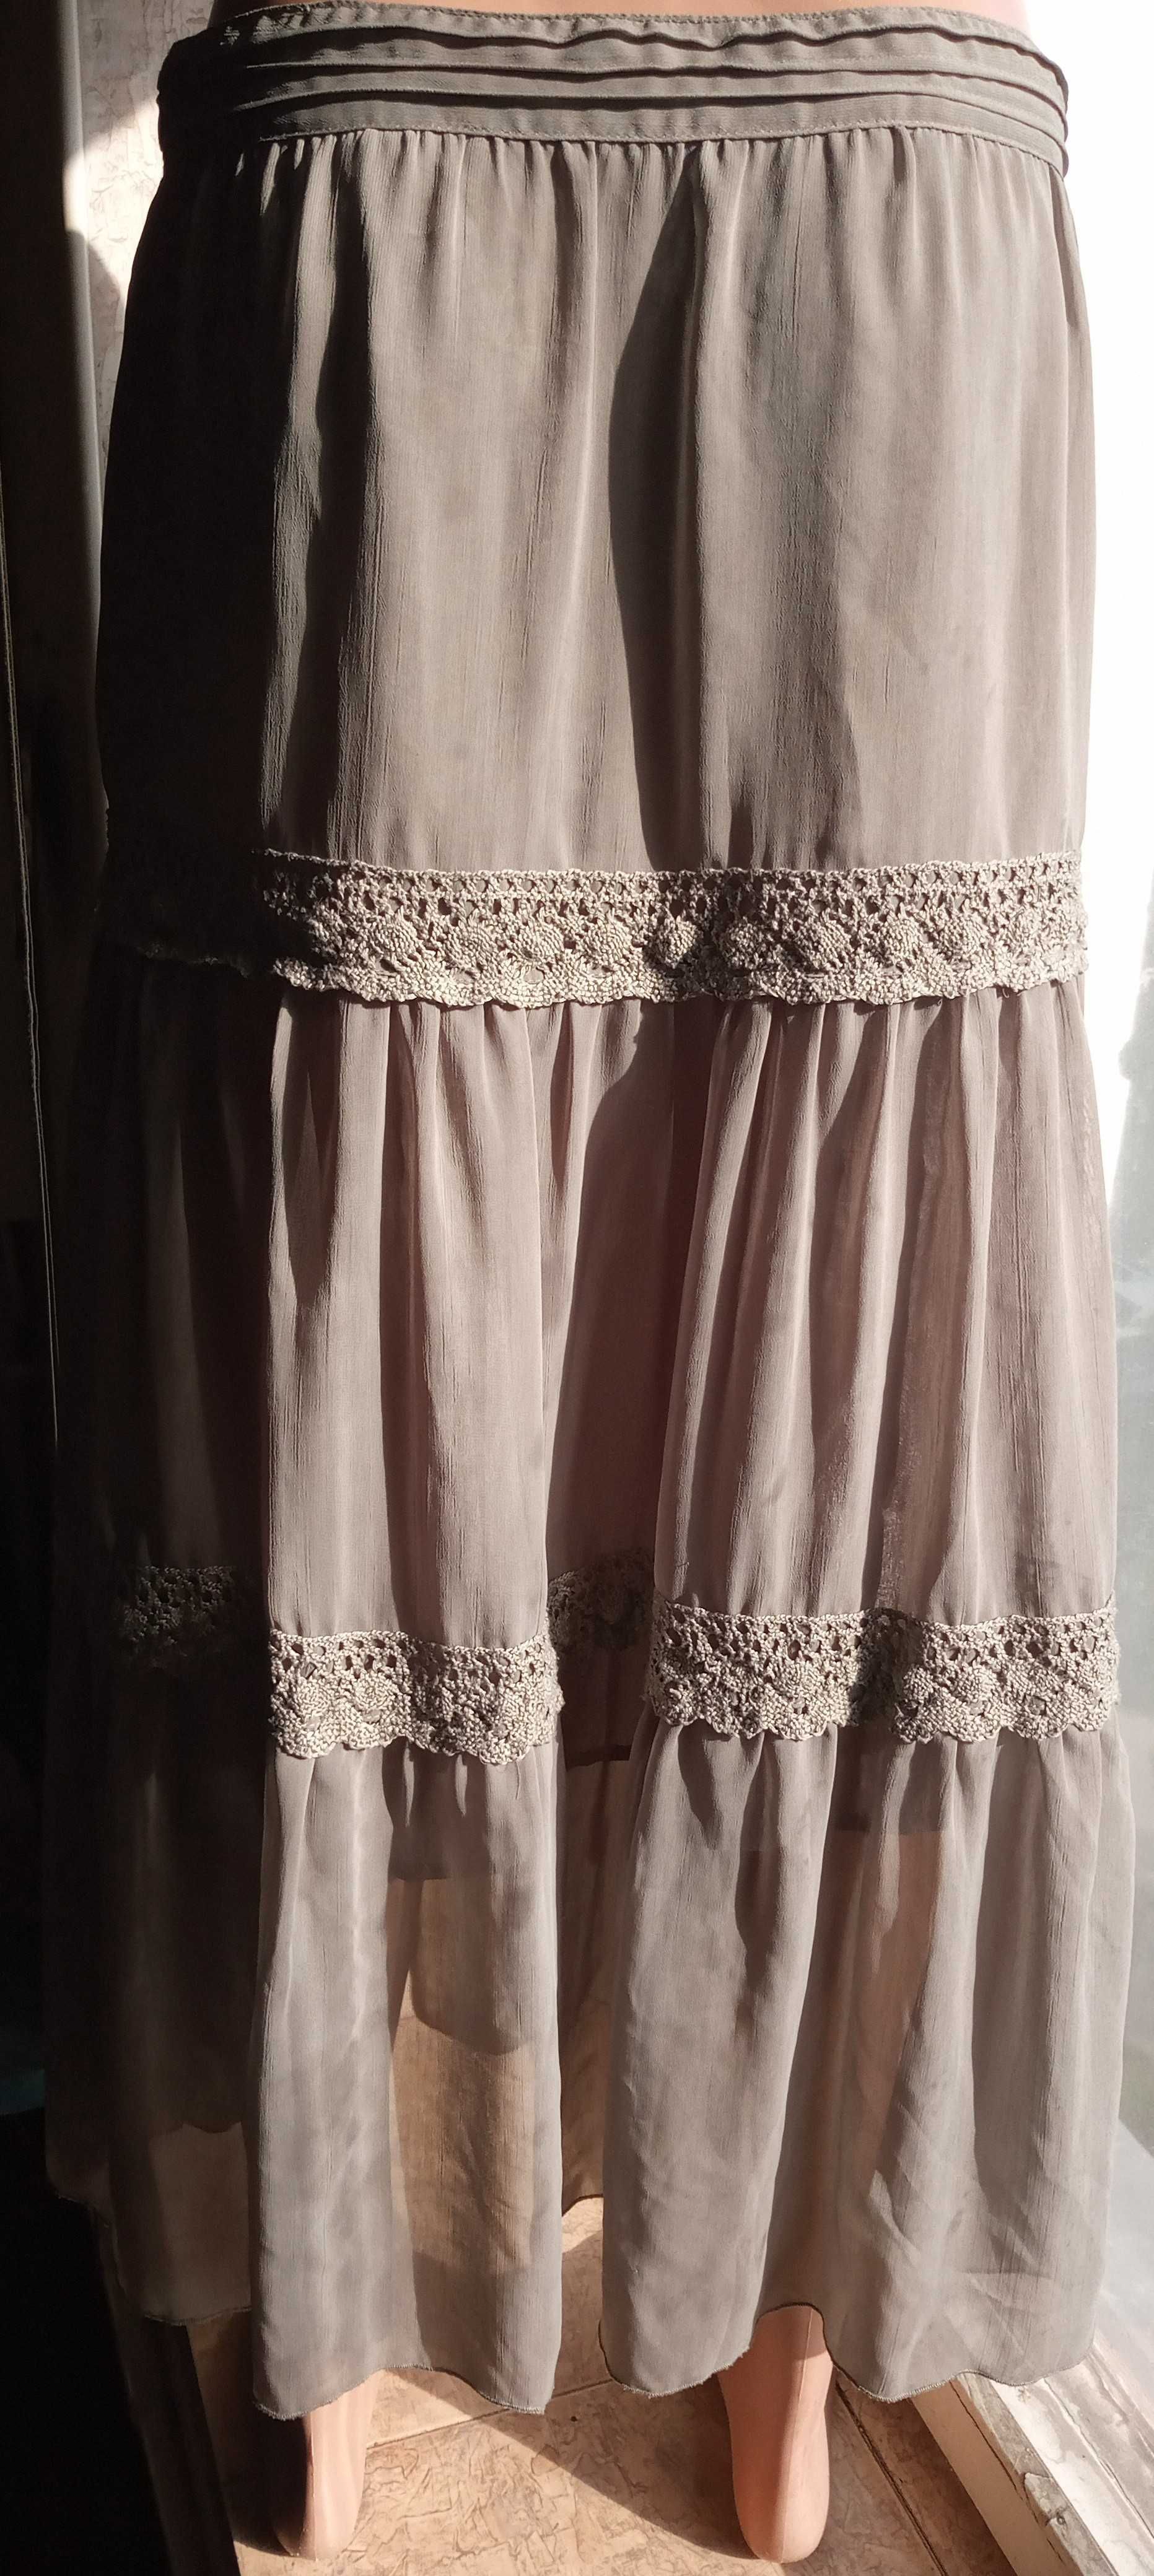 Шифоновая юбка на подкладке с кружевом